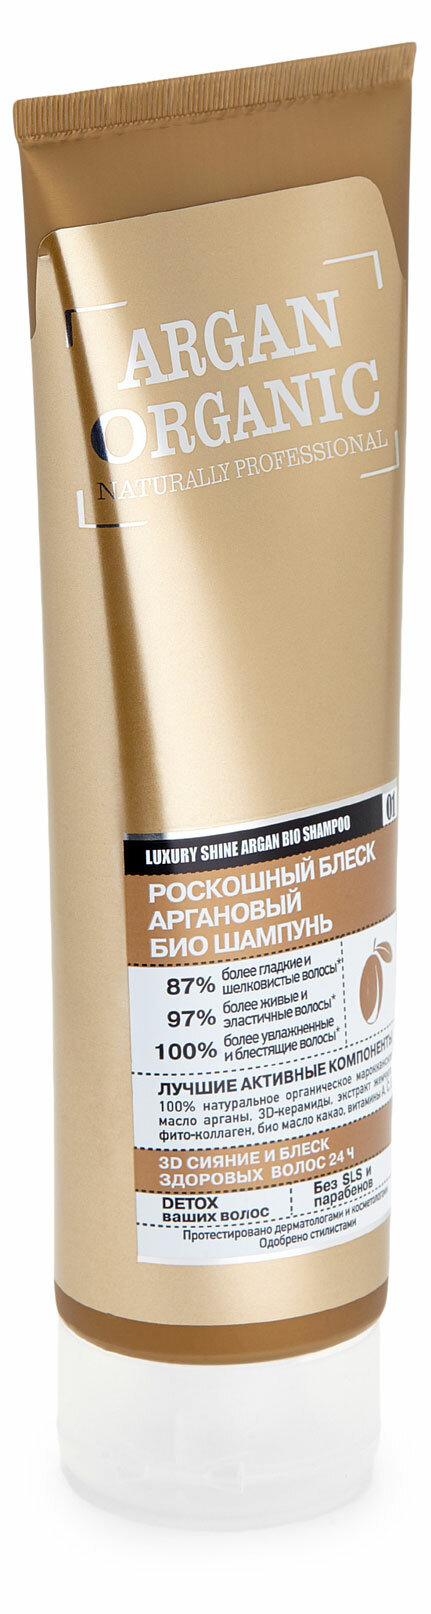 Шампунь для волос Organic Shop Naturally Professional Роскошный блеск аргановый, 250 мл